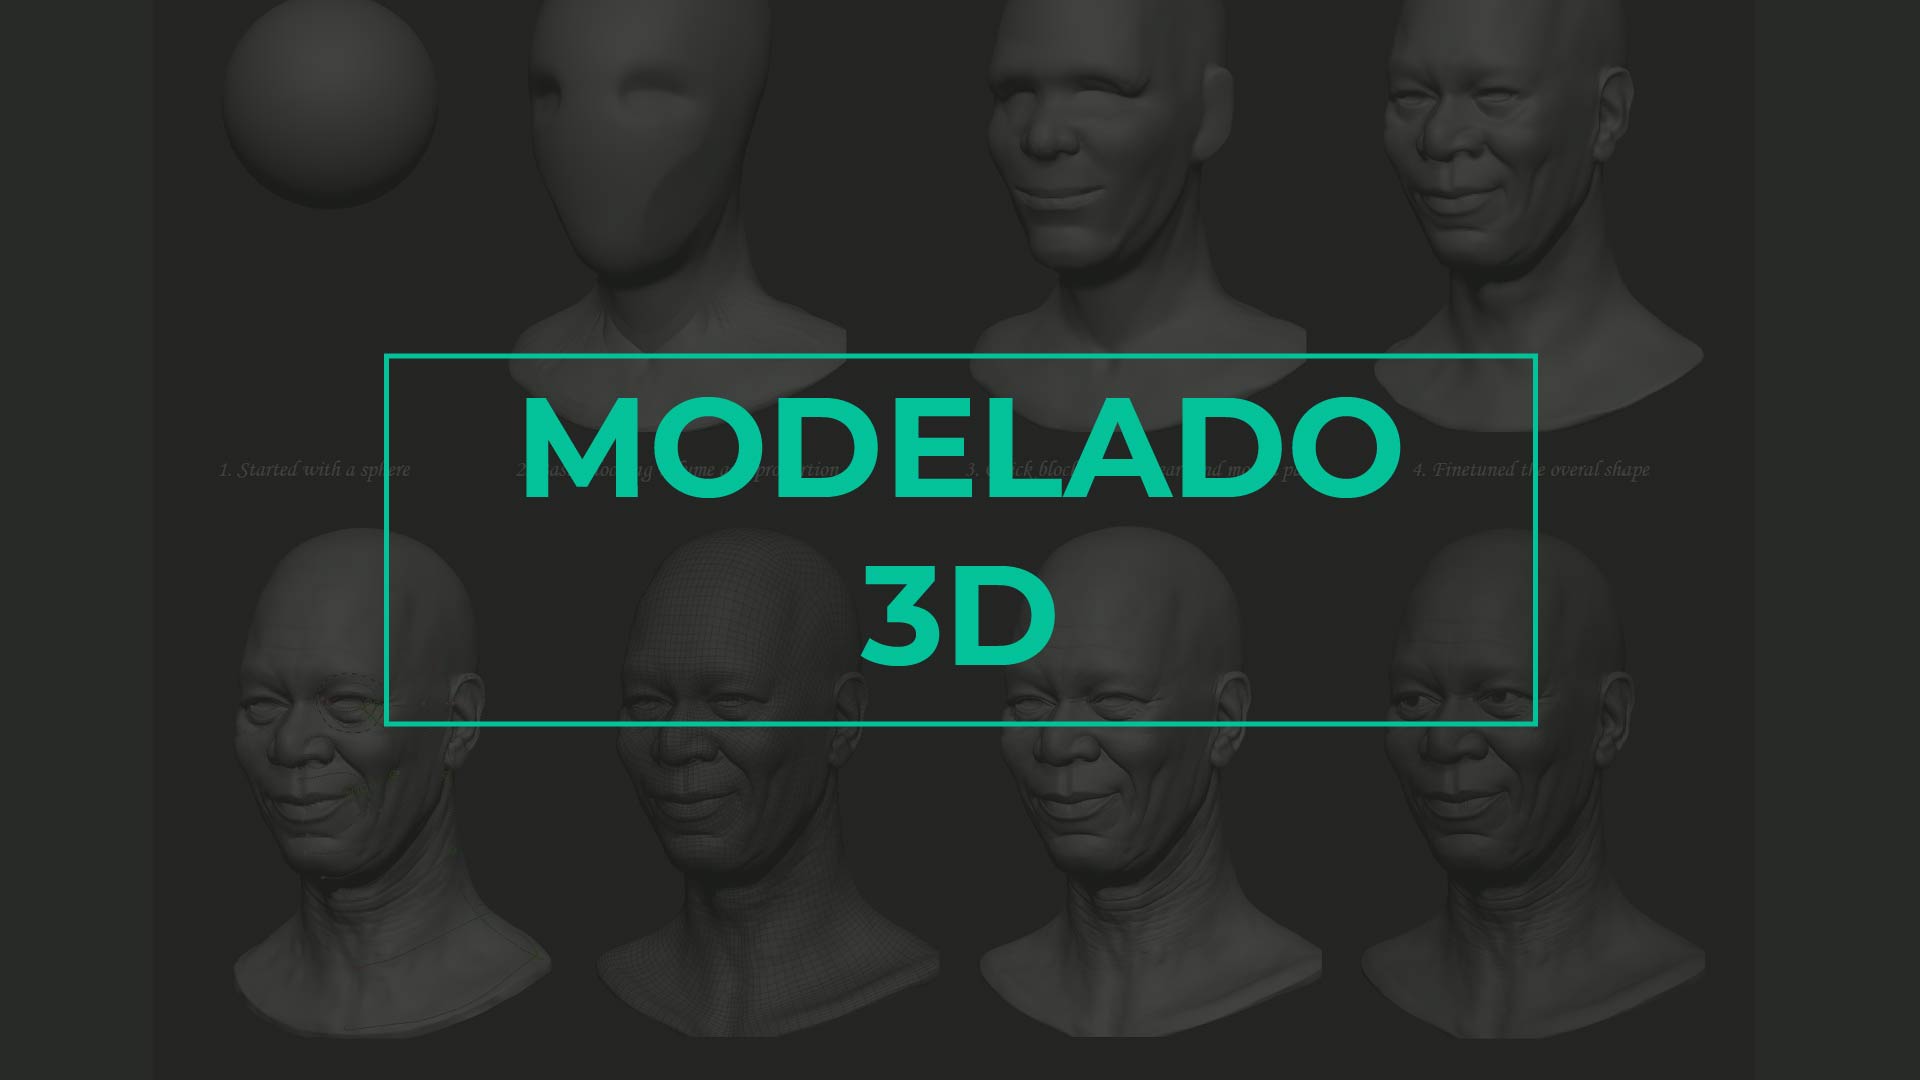 MODELADO
3D